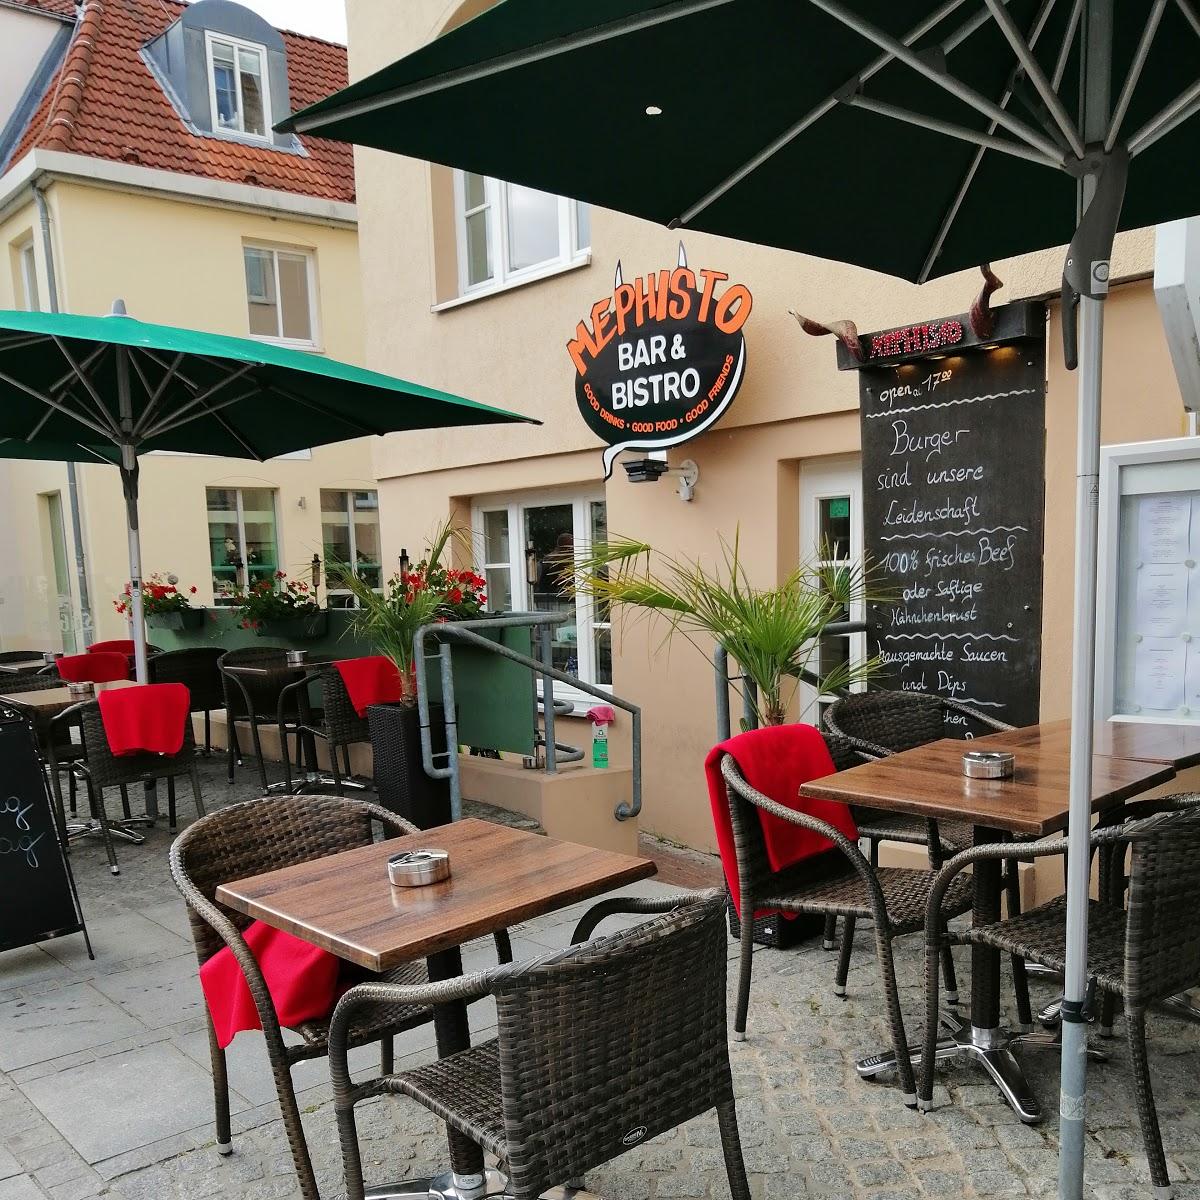 Restaurant "Mephisto" in Kühlungsborn